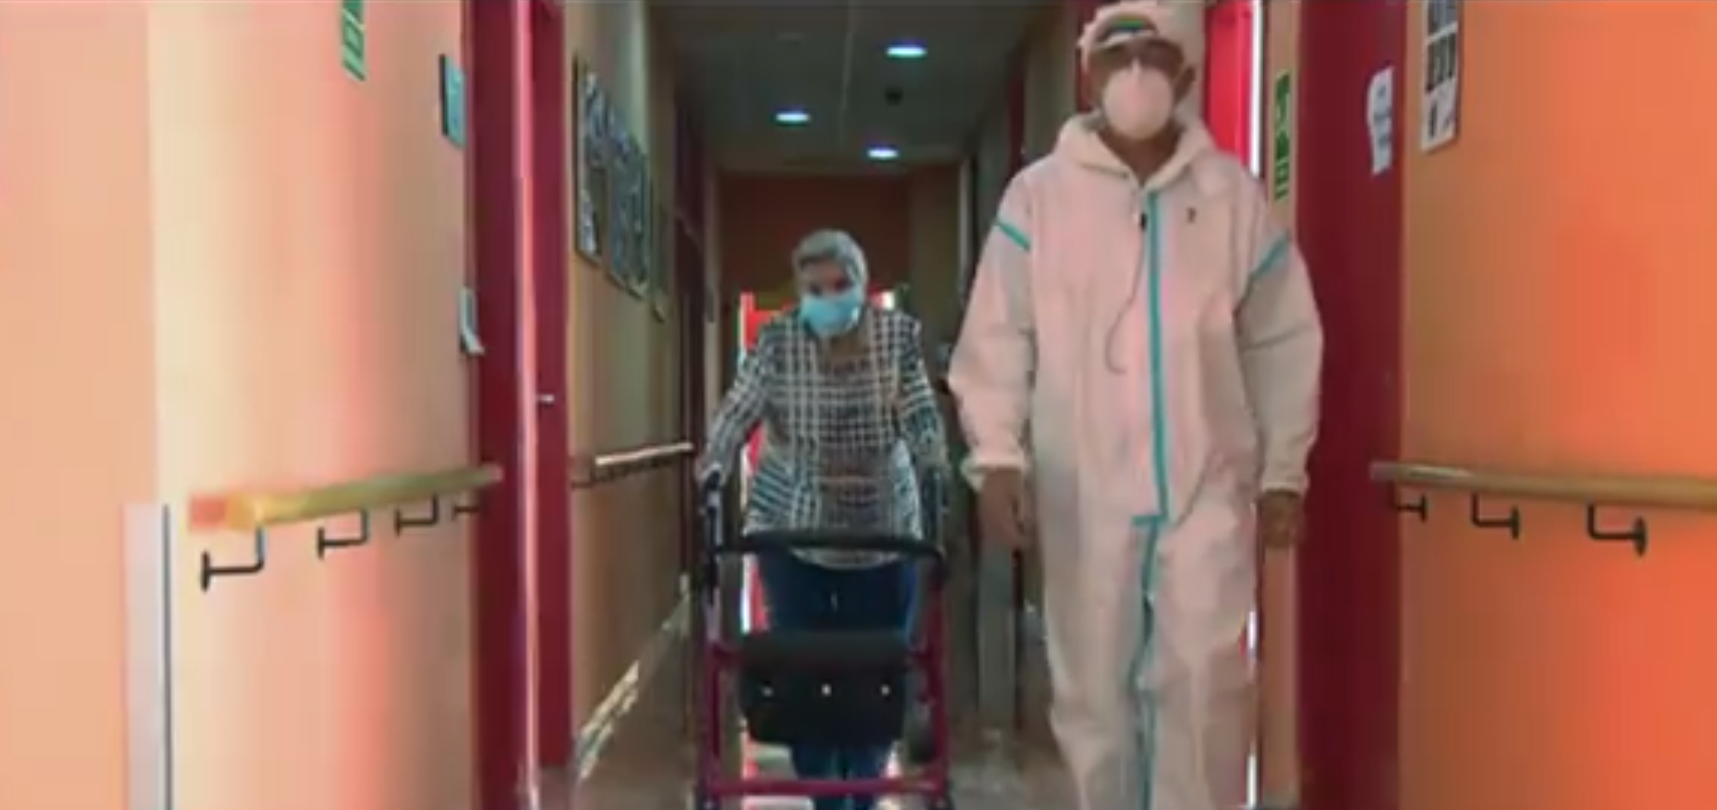 TVE emite un documental sobre lo ocurrido en las residencias de mayores durante el coronavirus